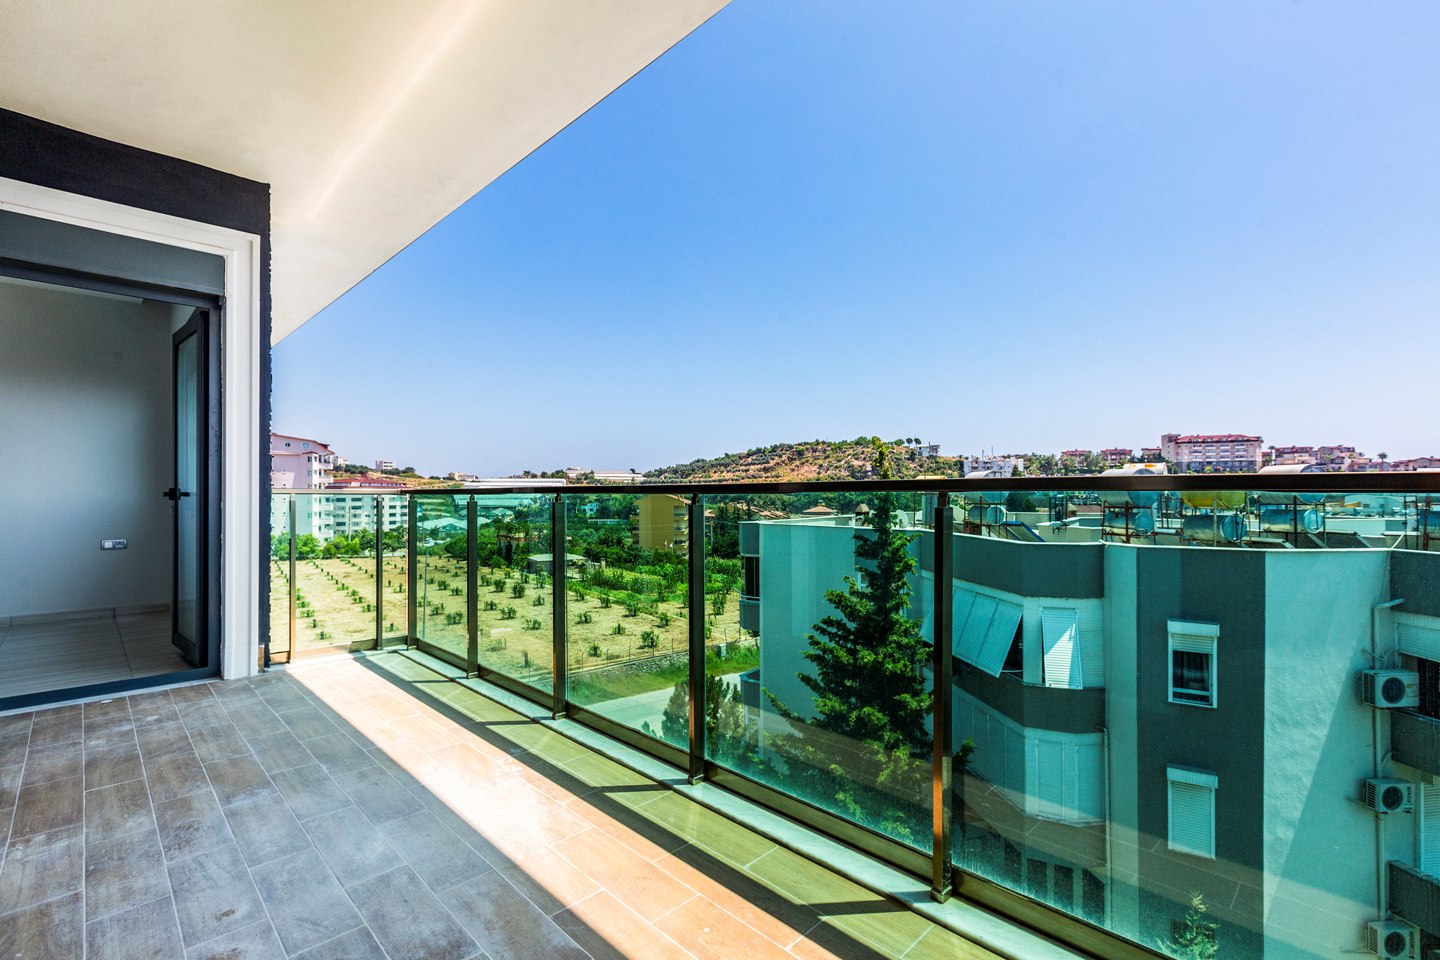 Квартира 2+1 для инвестиций в недвижимость Турции (109 кв.м.) в развитом районе